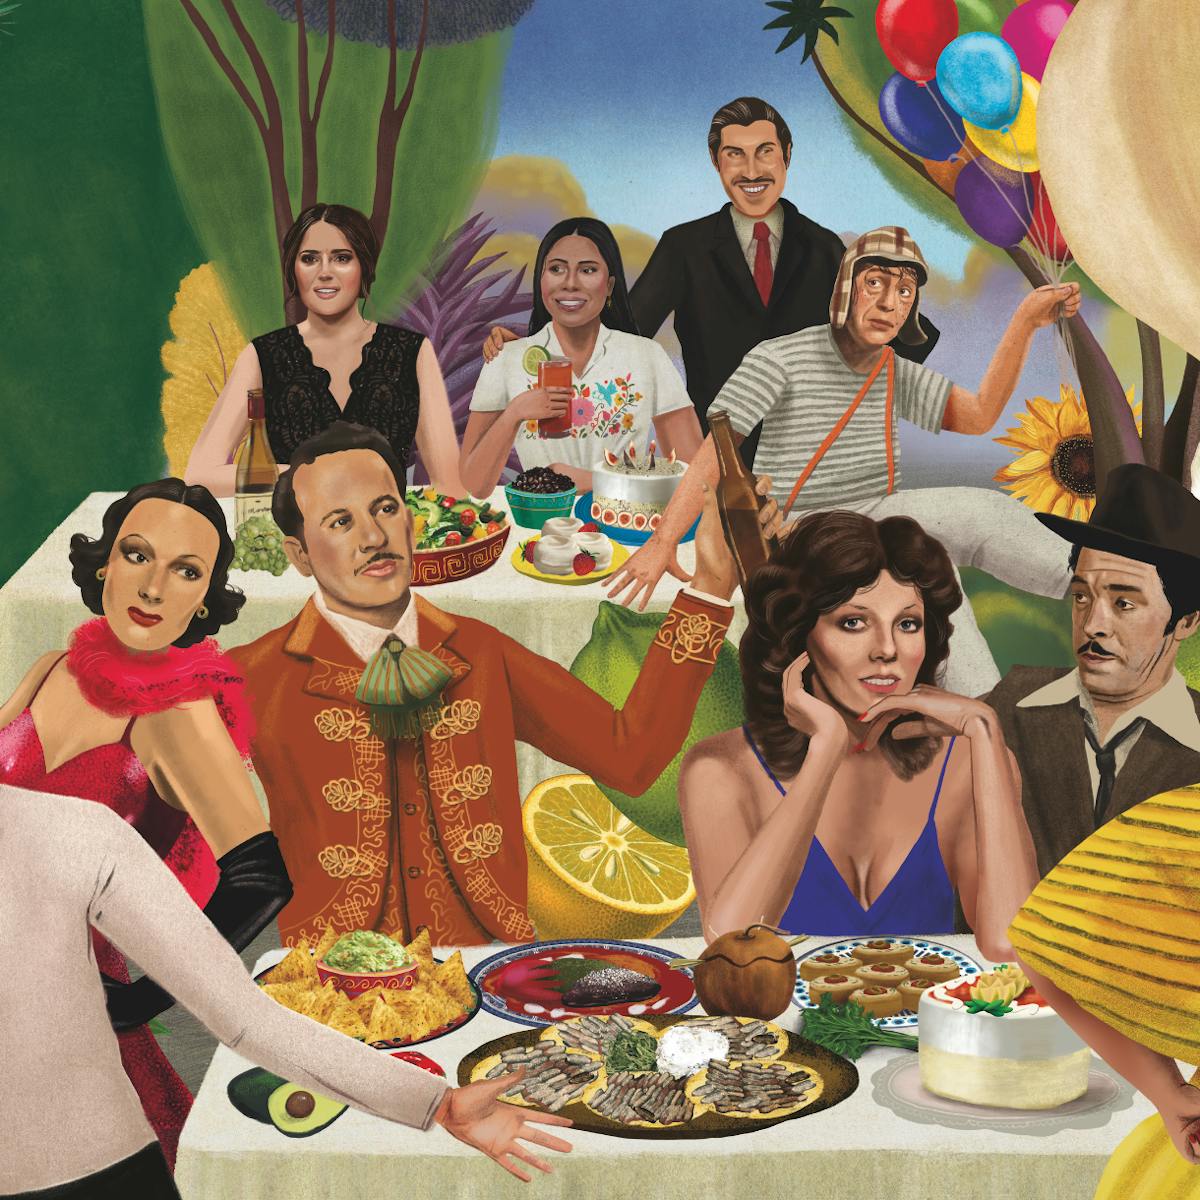 Un equipo de leyendas del cine y la televisión mexicanos se sientan alrededor de coloridas mesas repletas de comida.